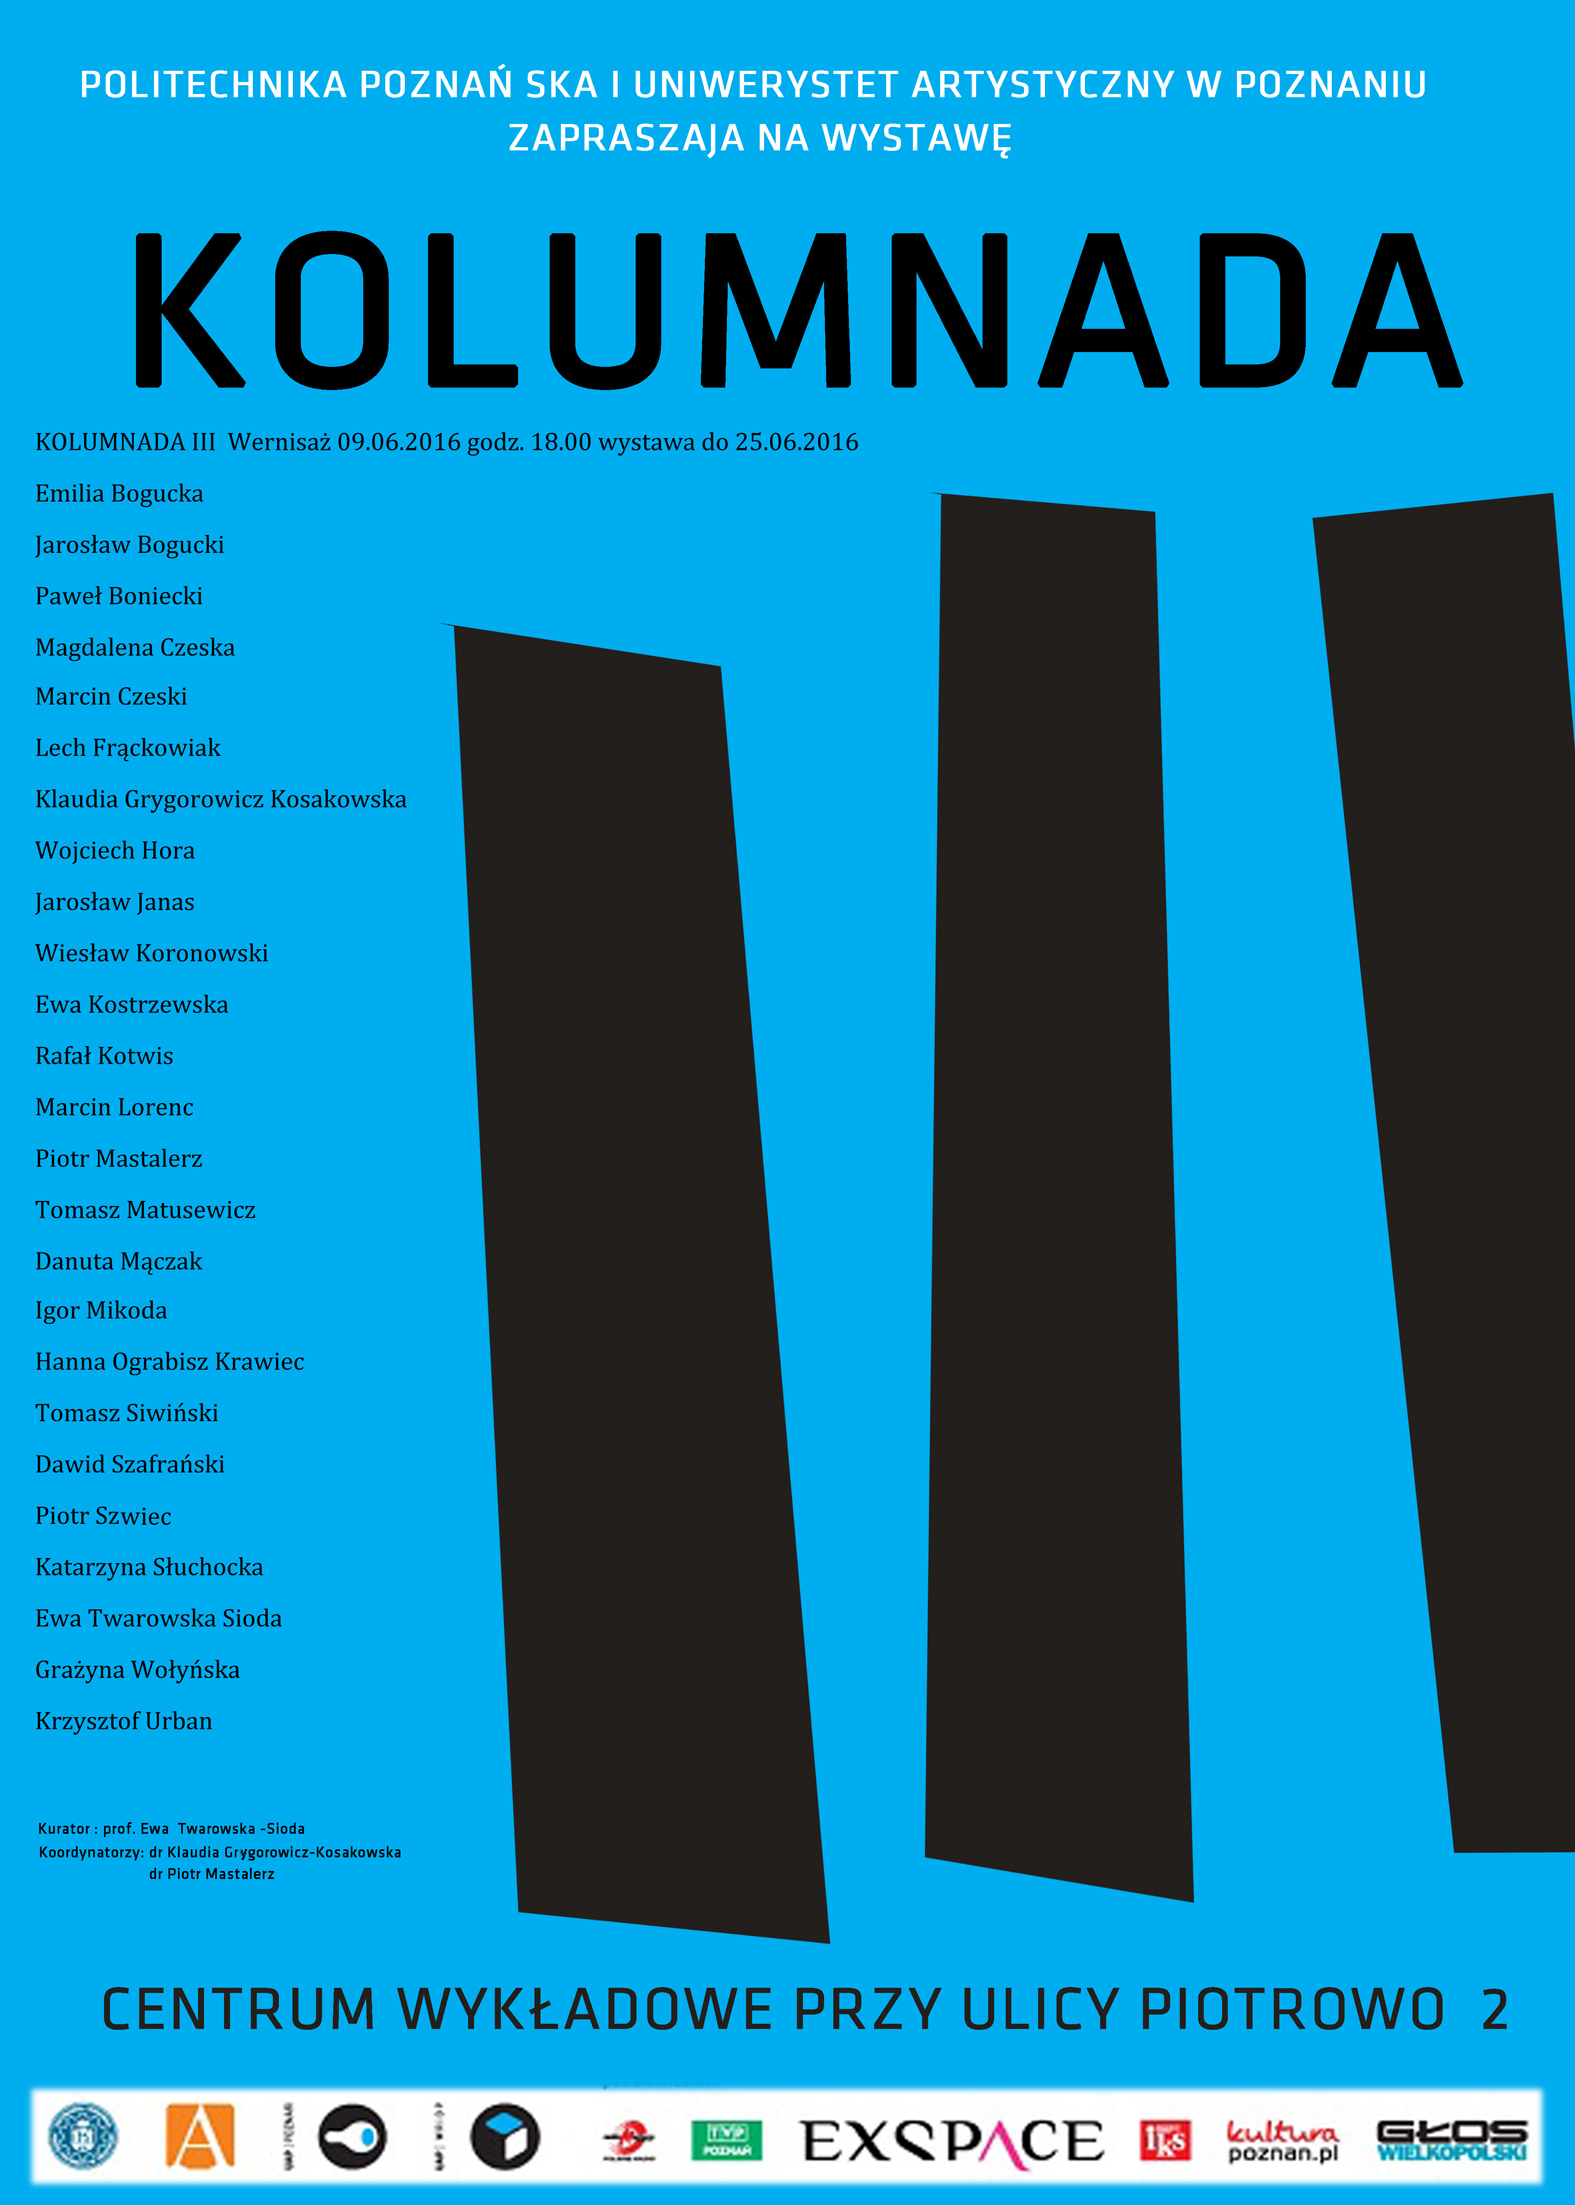 KOLUMNADA III